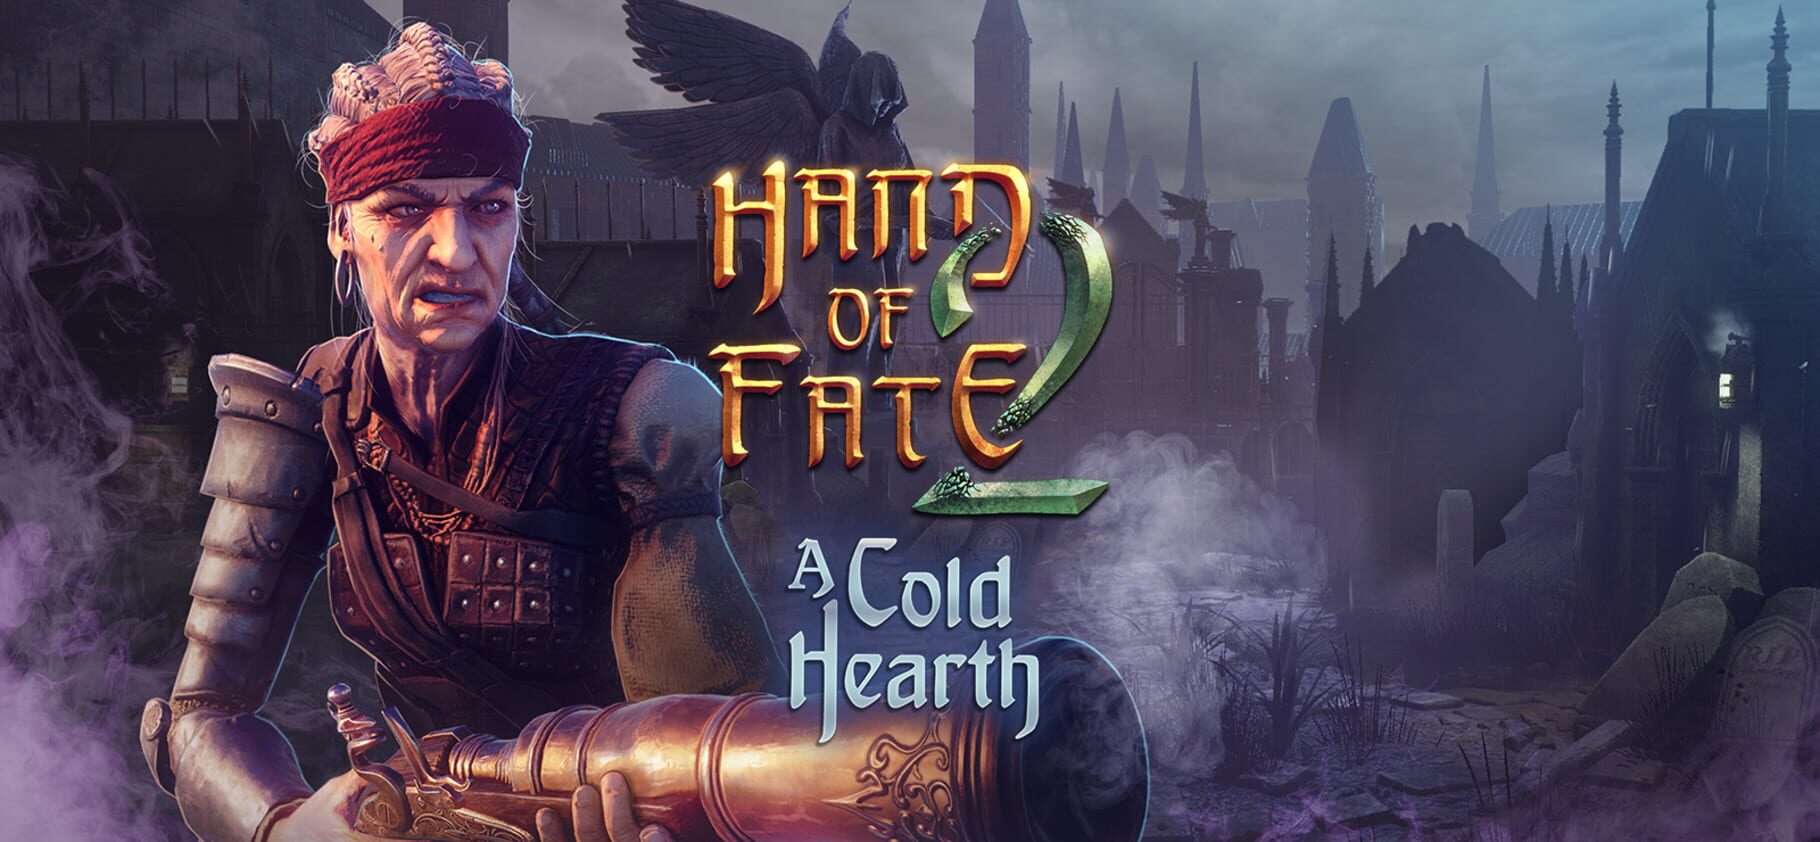 Hand of Fate 2: A Cold Hearth artwork